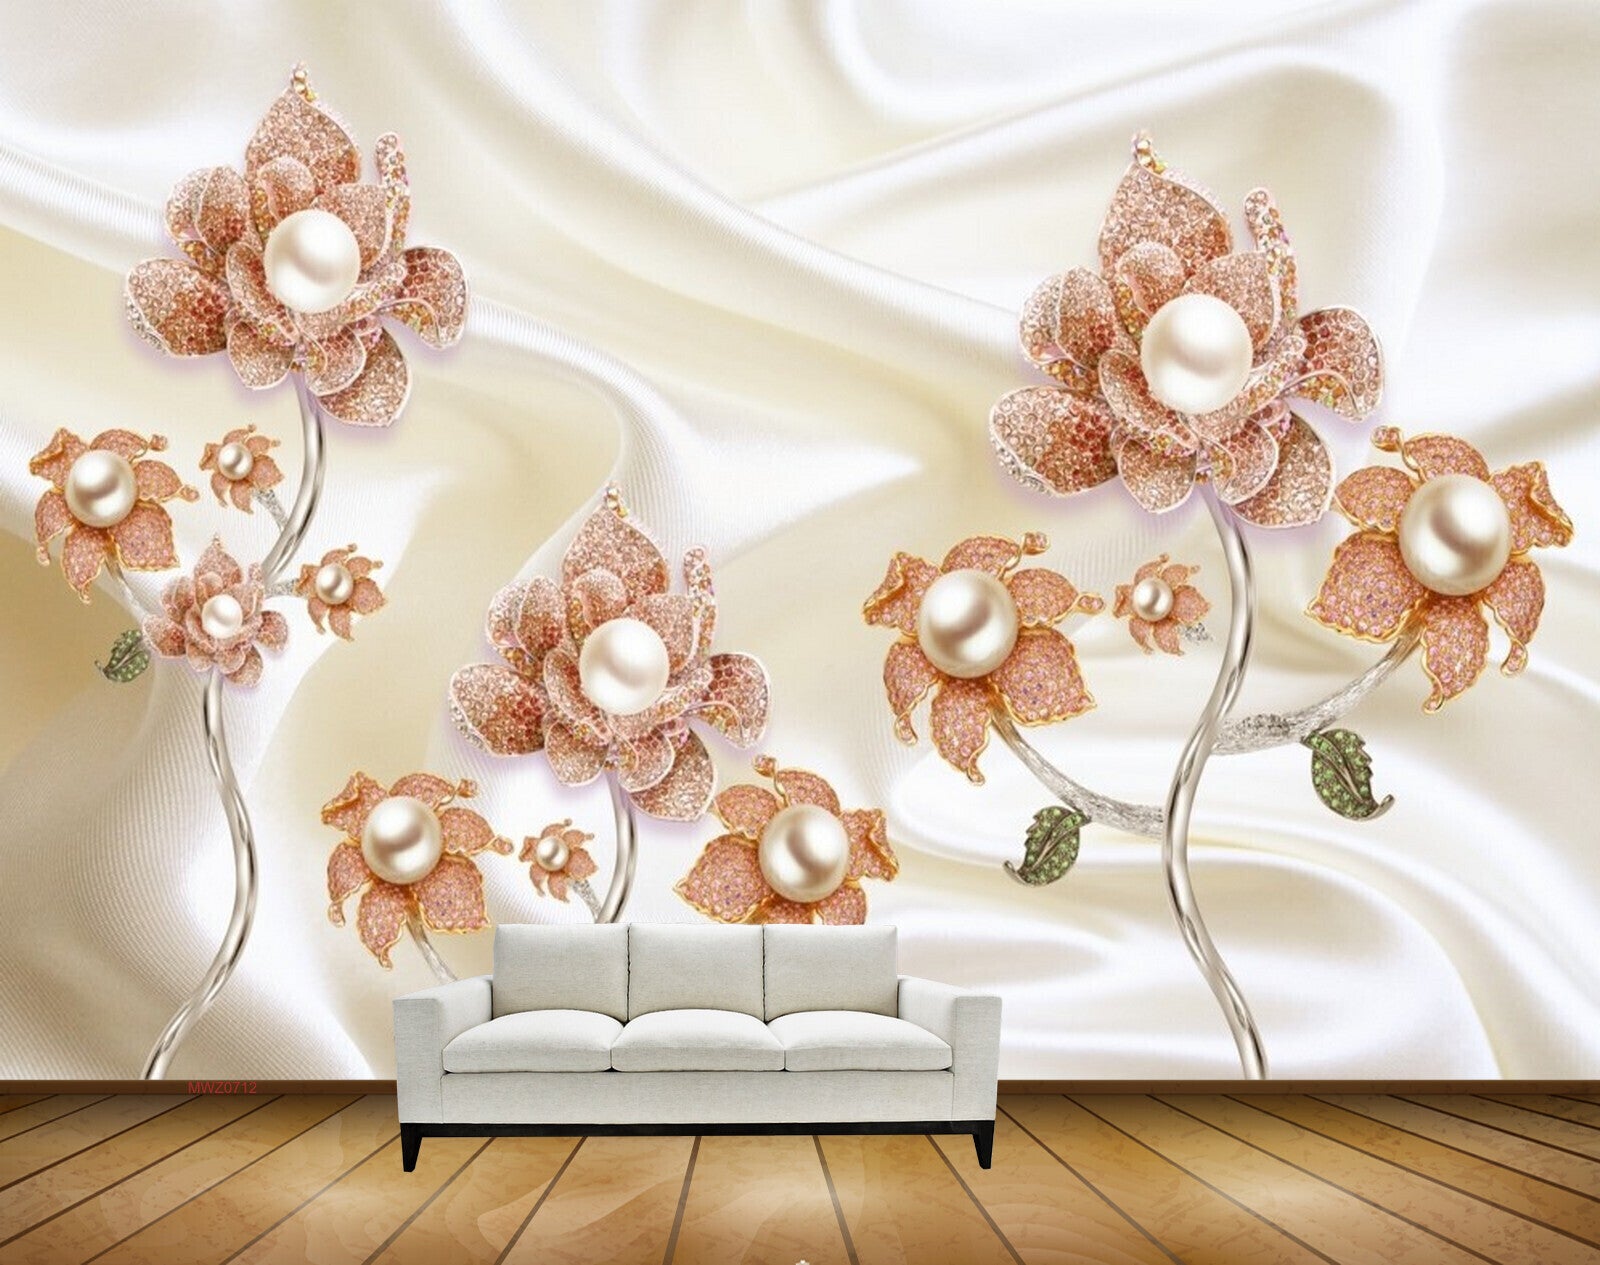 Avikalp MWZ0712 Pink White Flowers 3D HD Wallpaper